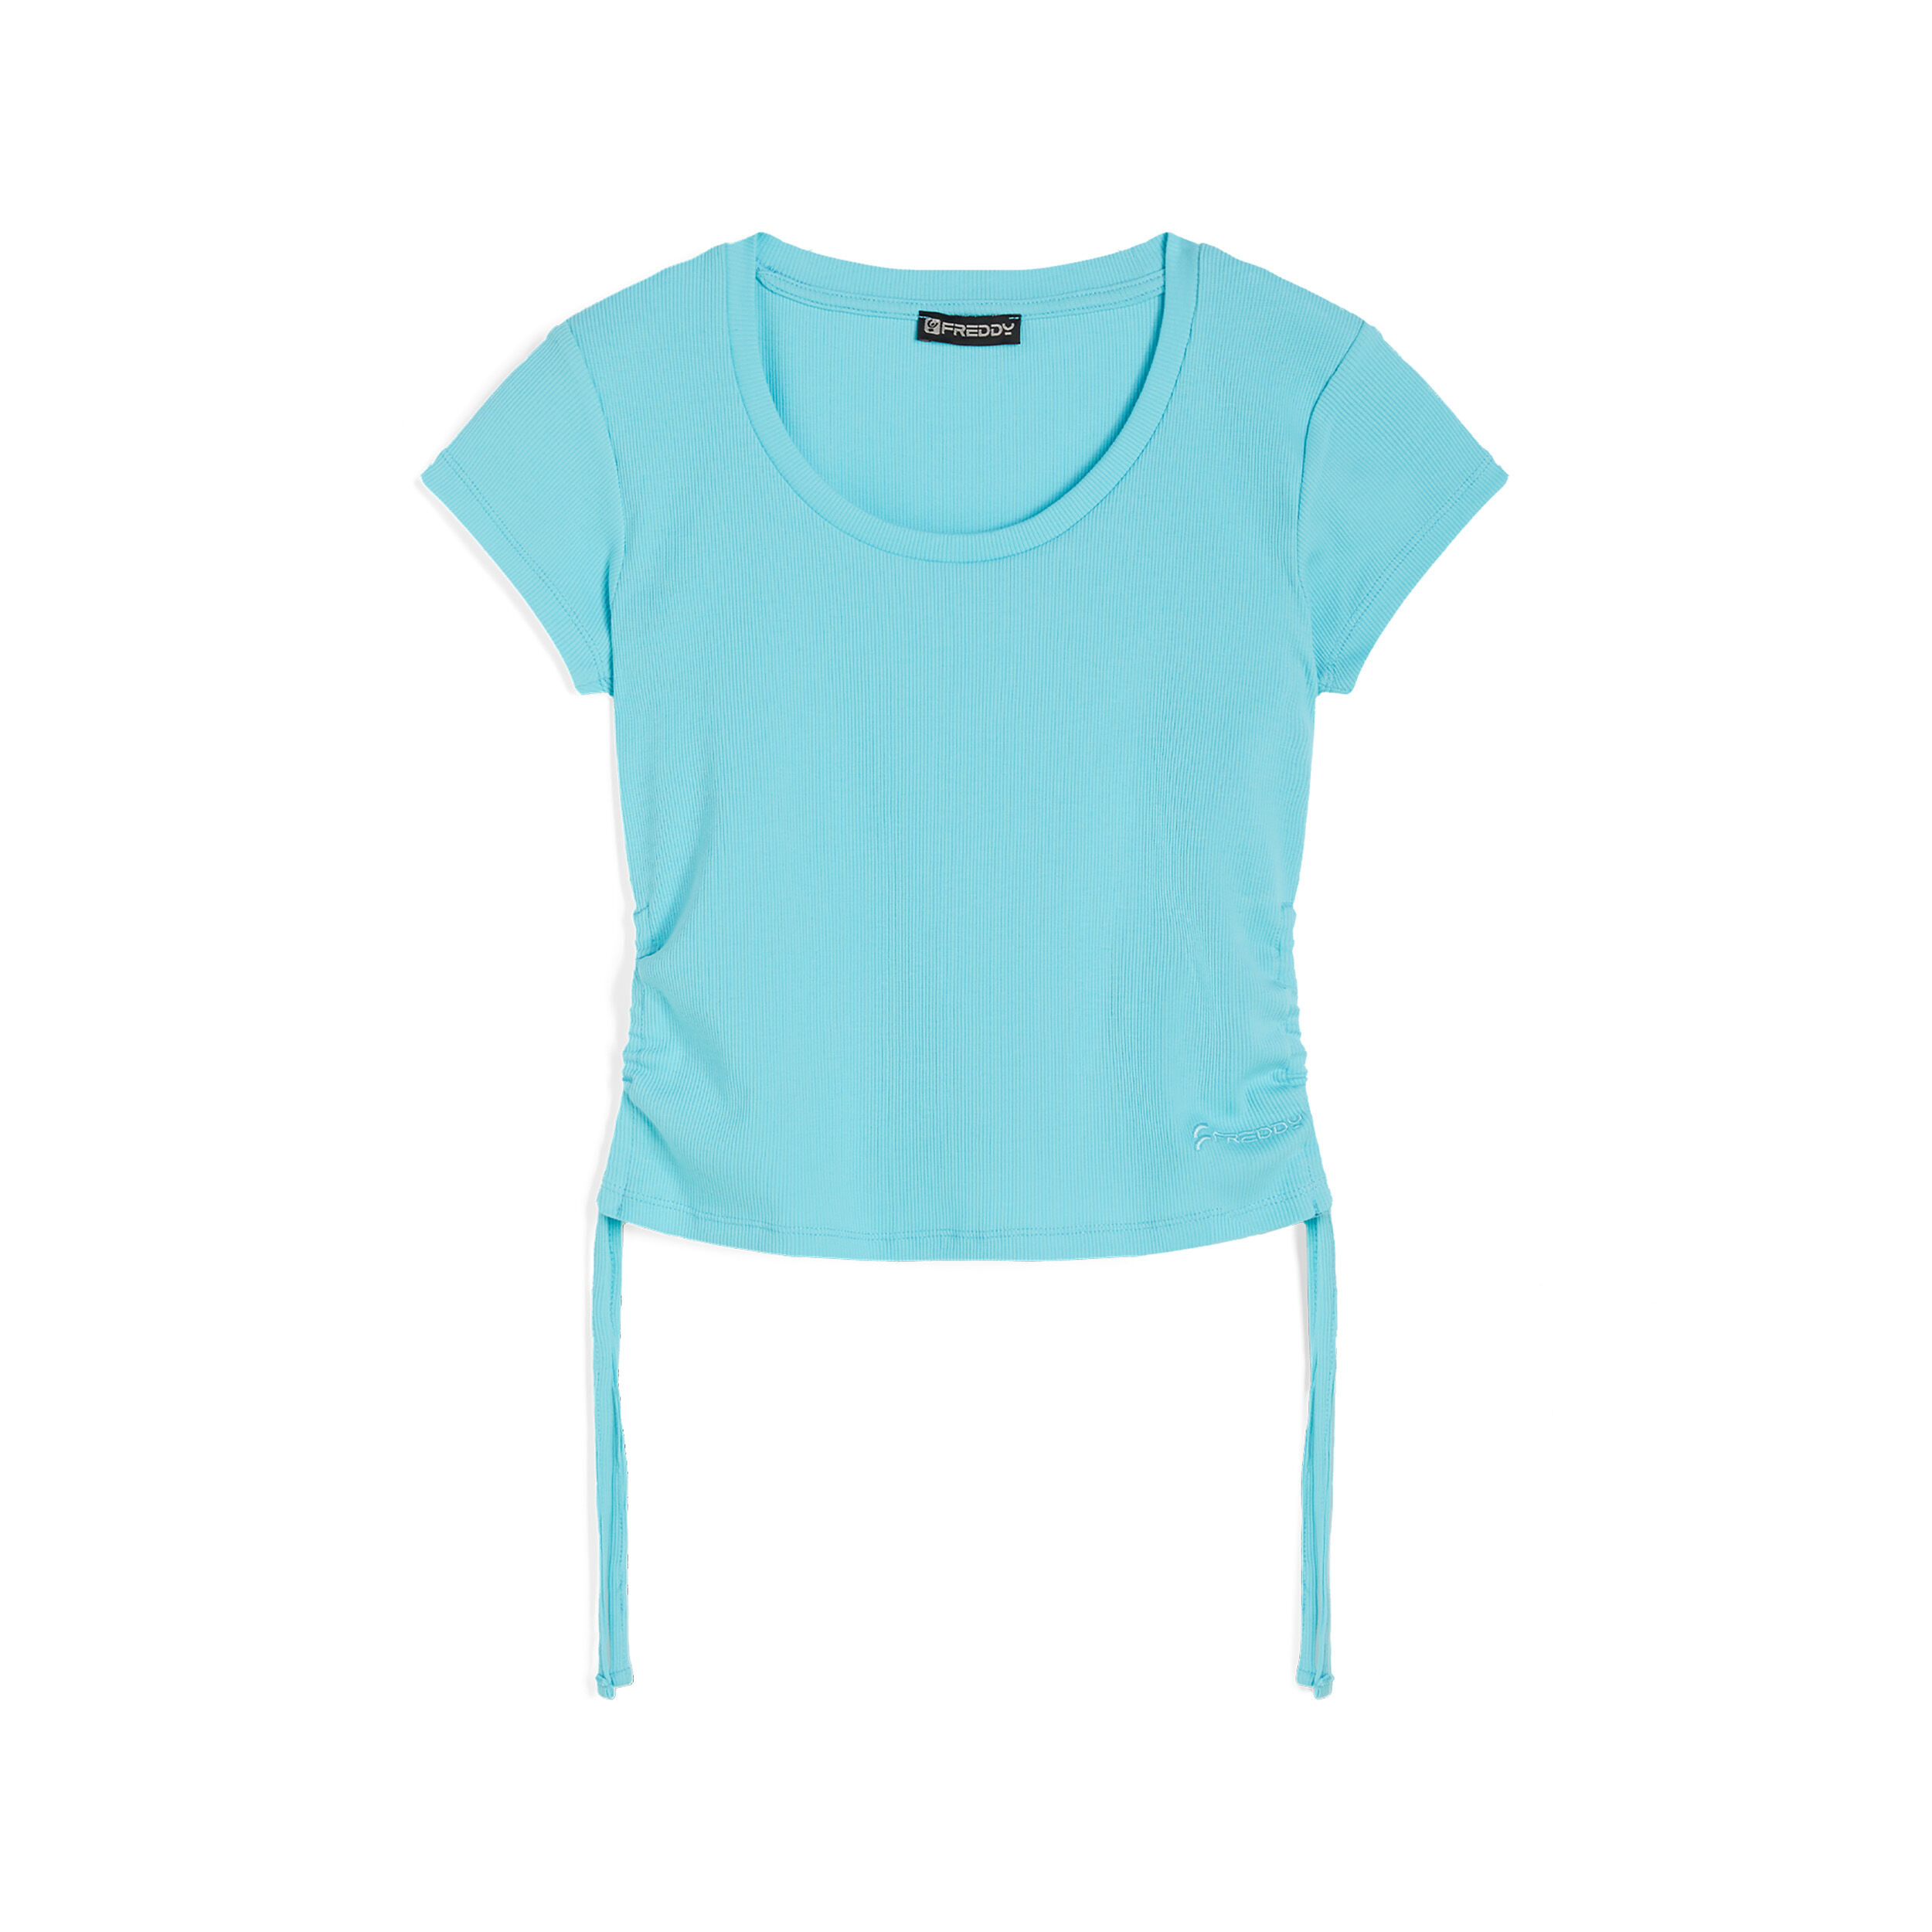 Freddy T-shirt donna slim fit in costina con laccetti sui fianchi Blue Radiance Donna Small